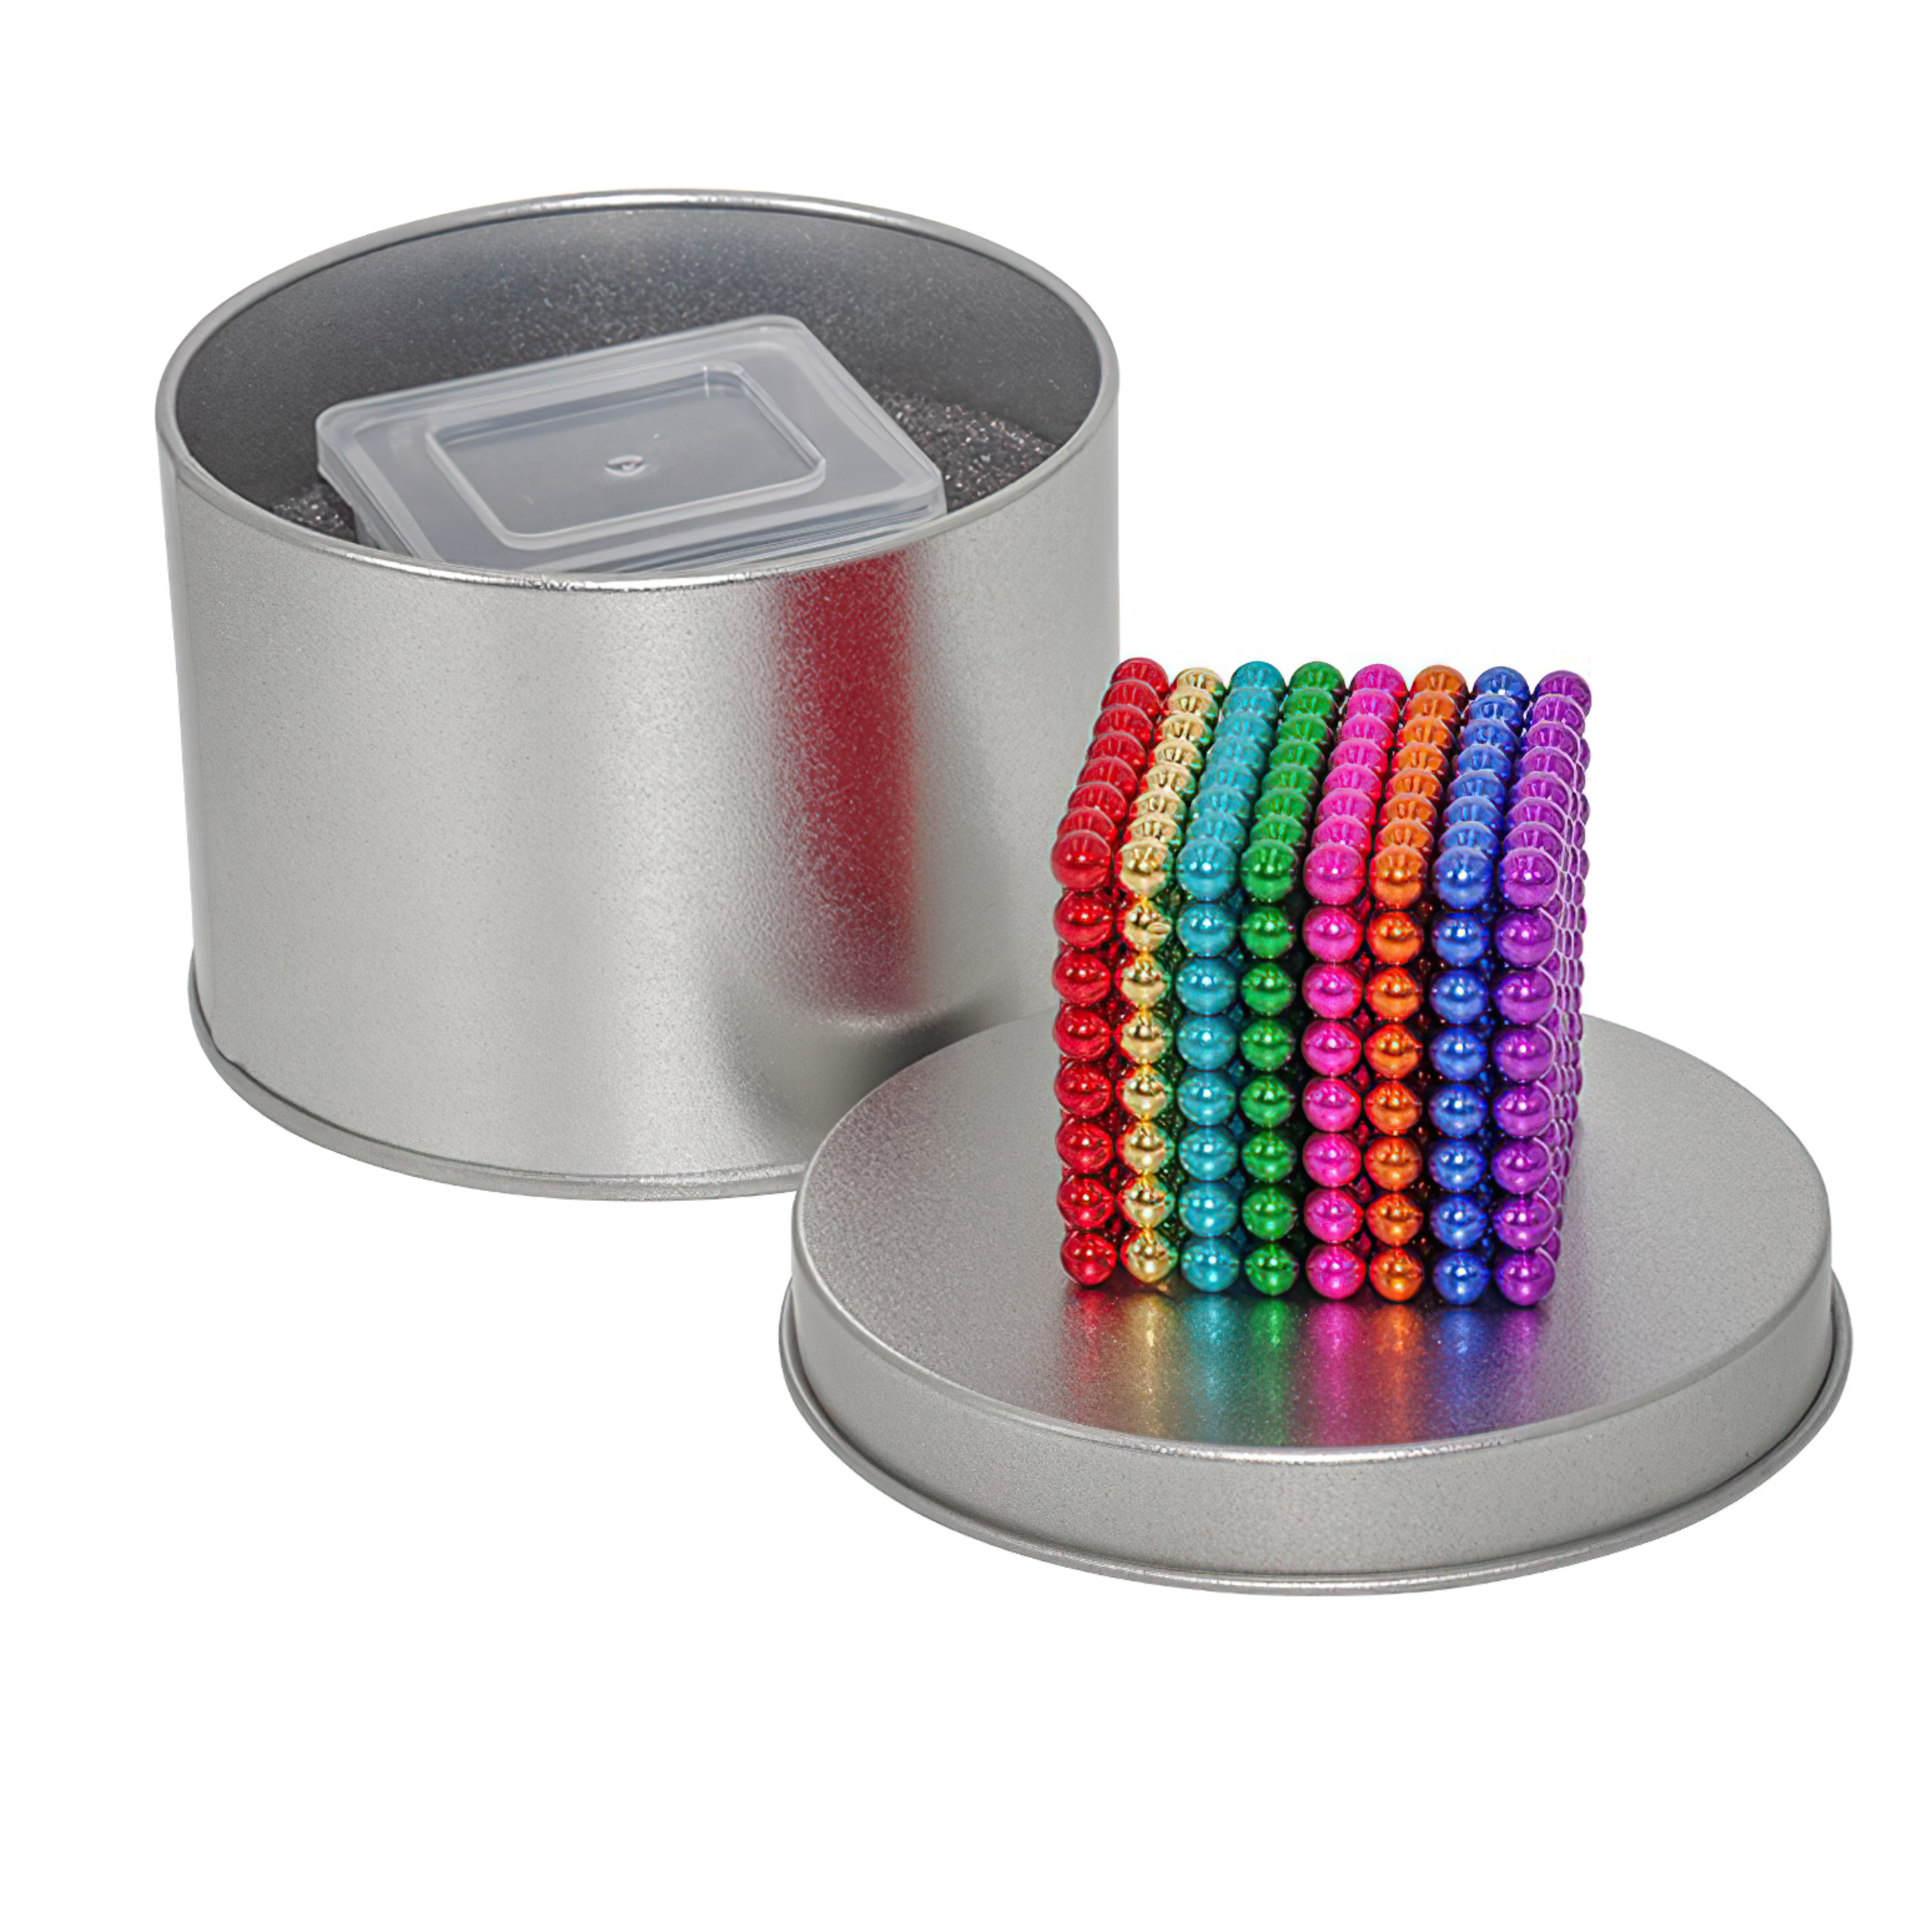 Set 216 bolitas magnéticas - 5 mm - 8 colores